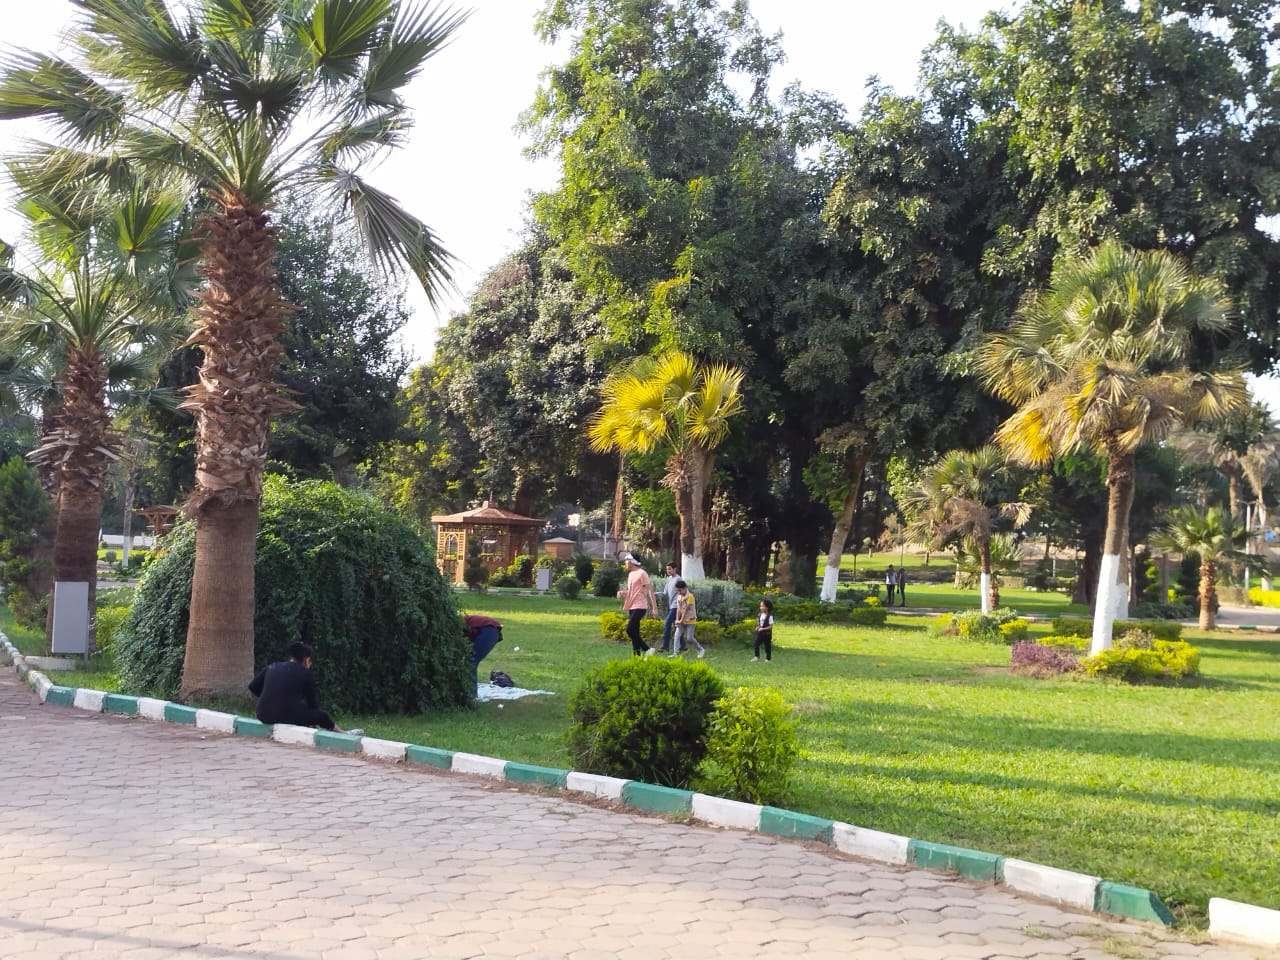 شجرة عمرها 200 سنة زرعها محمد على باشا فى قلب حدائق القناطر الخيرية